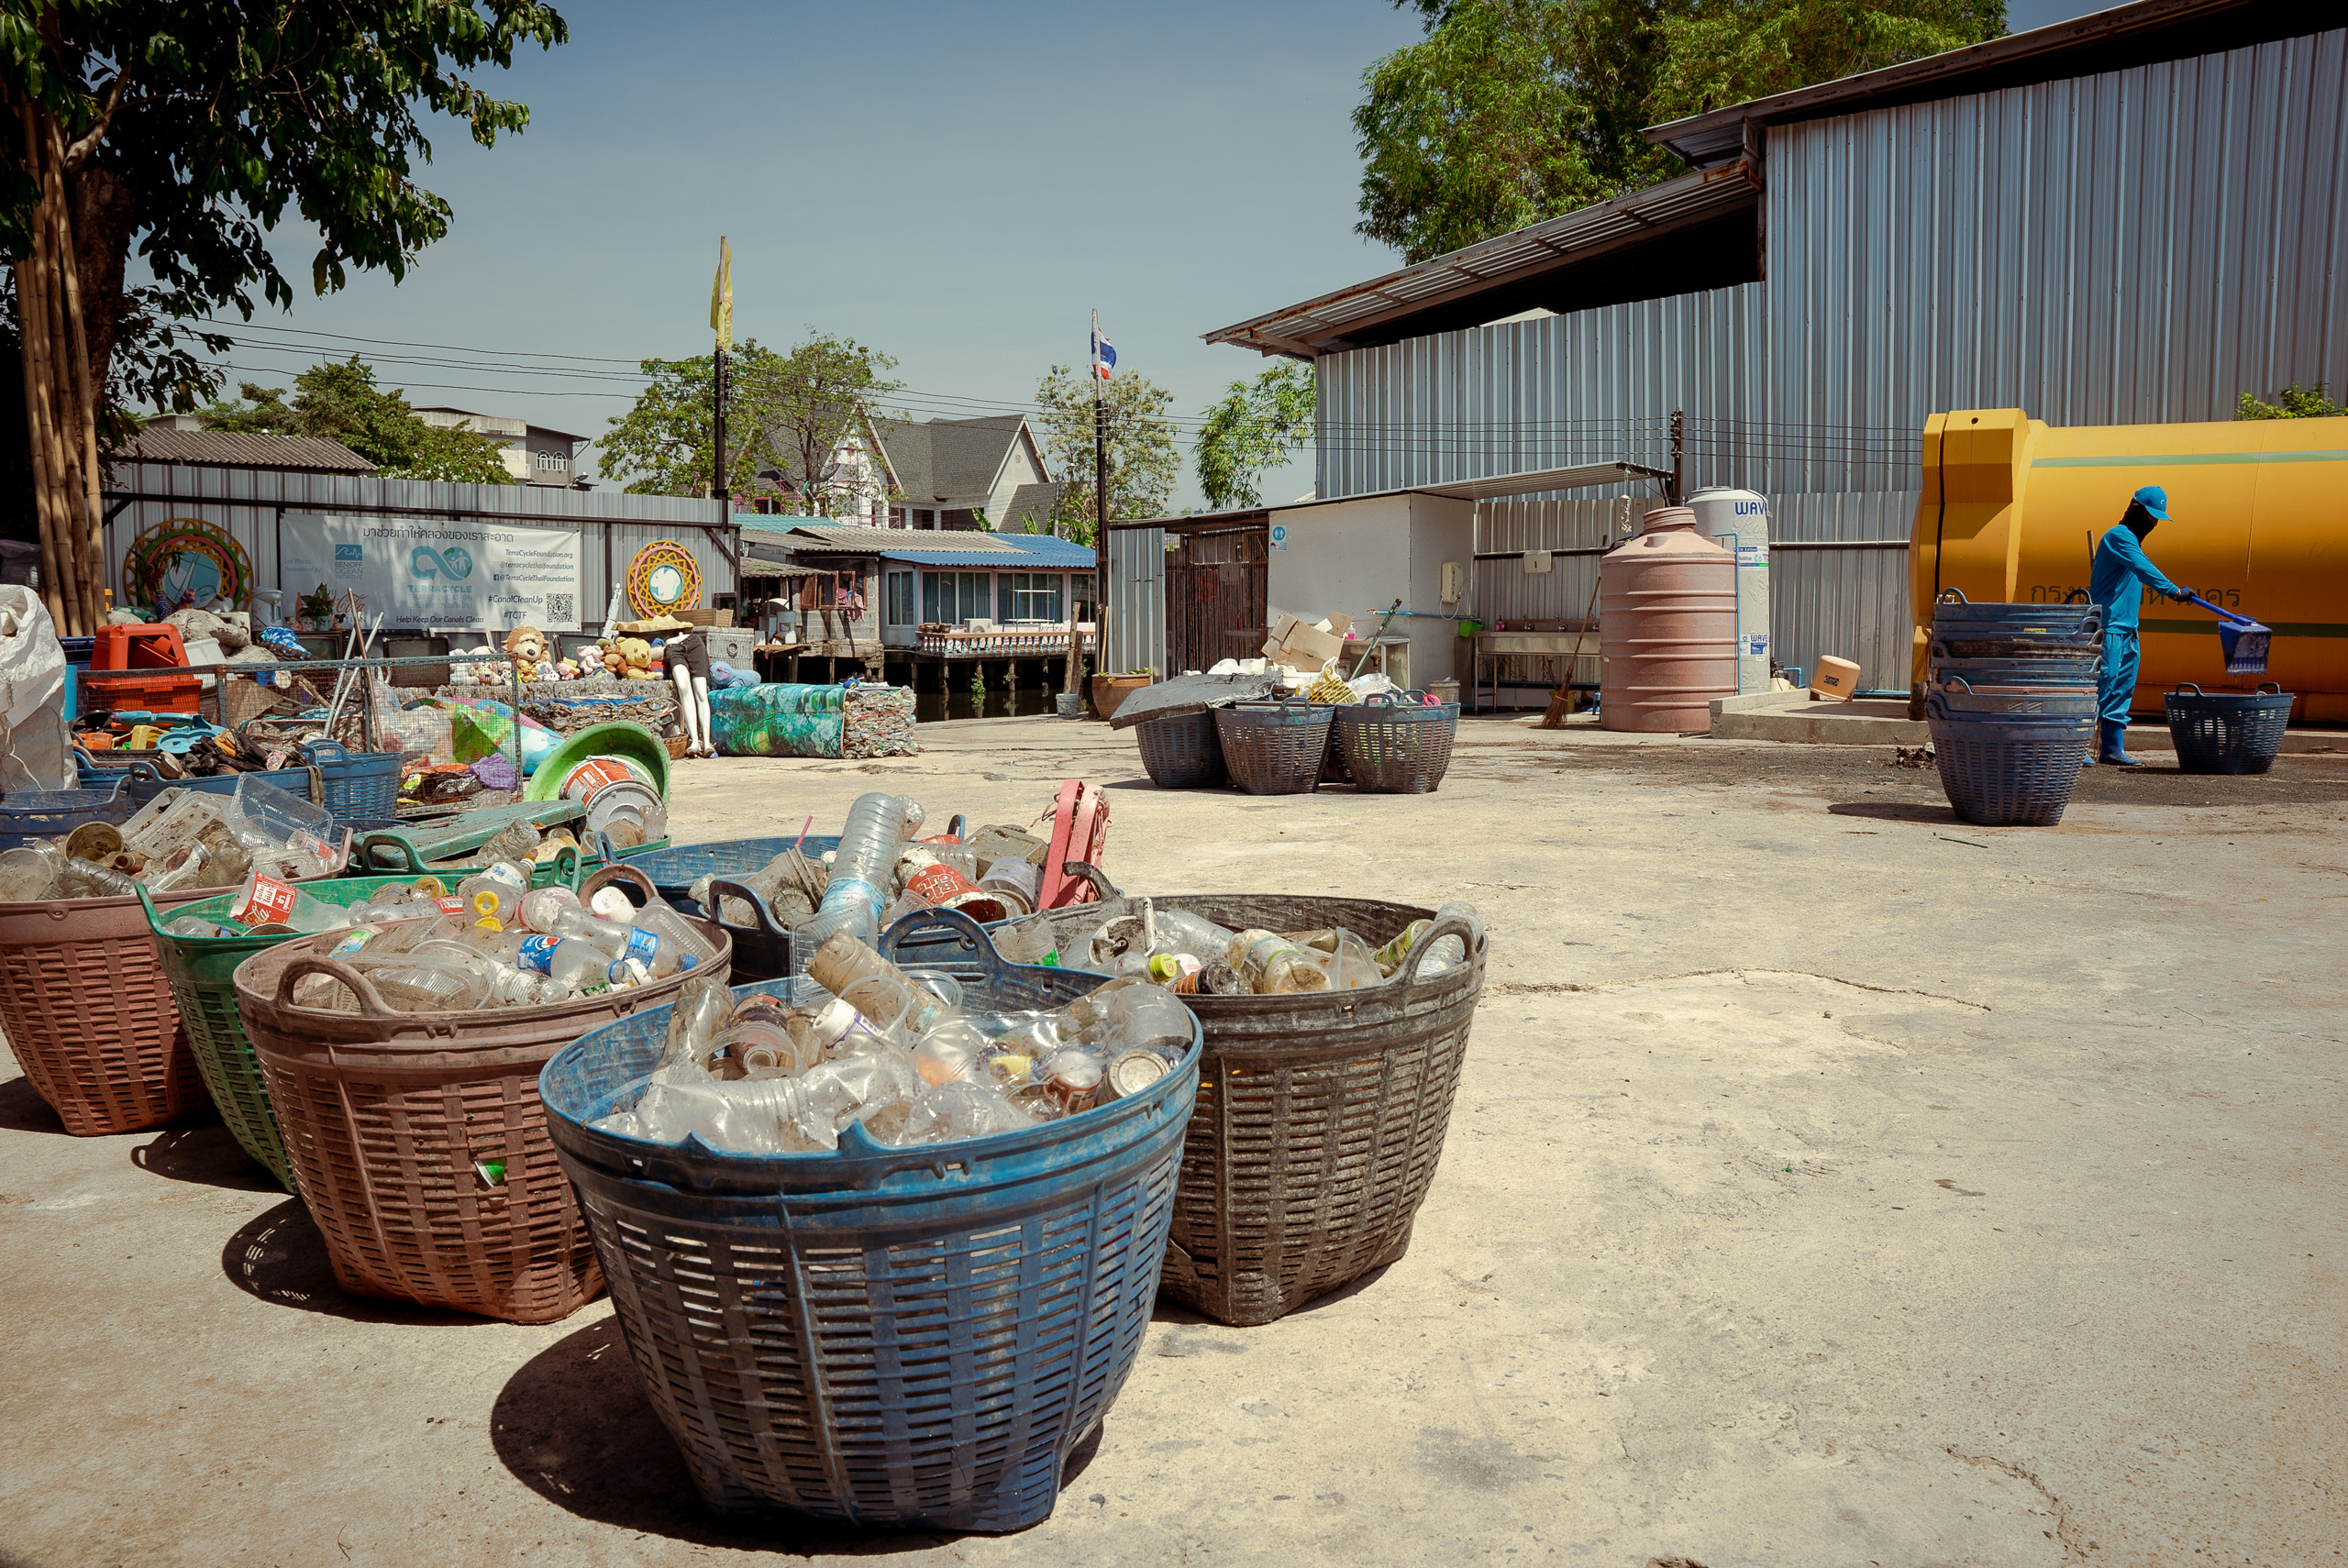 baskets of waste on ground